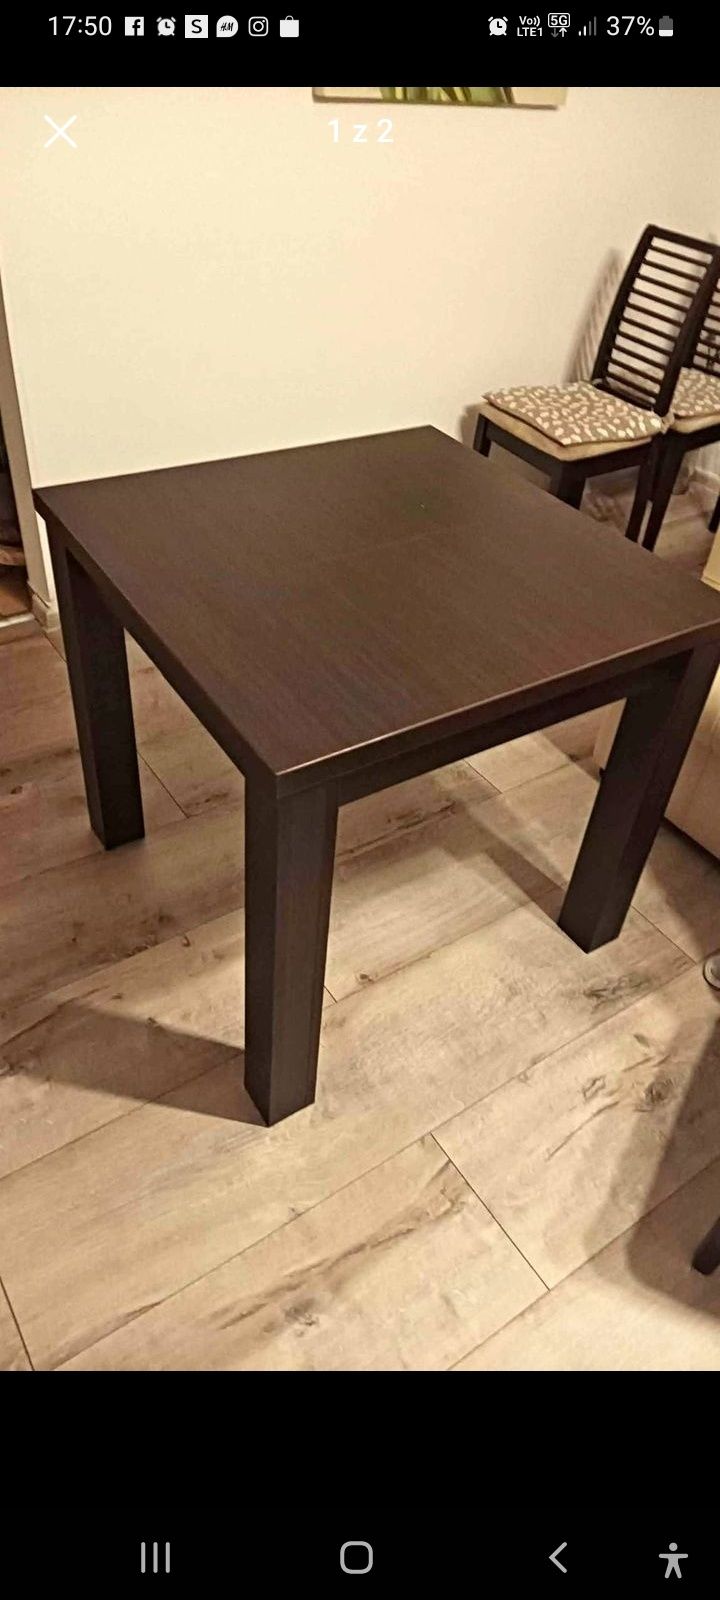 Stół rozkładany do 180 cm